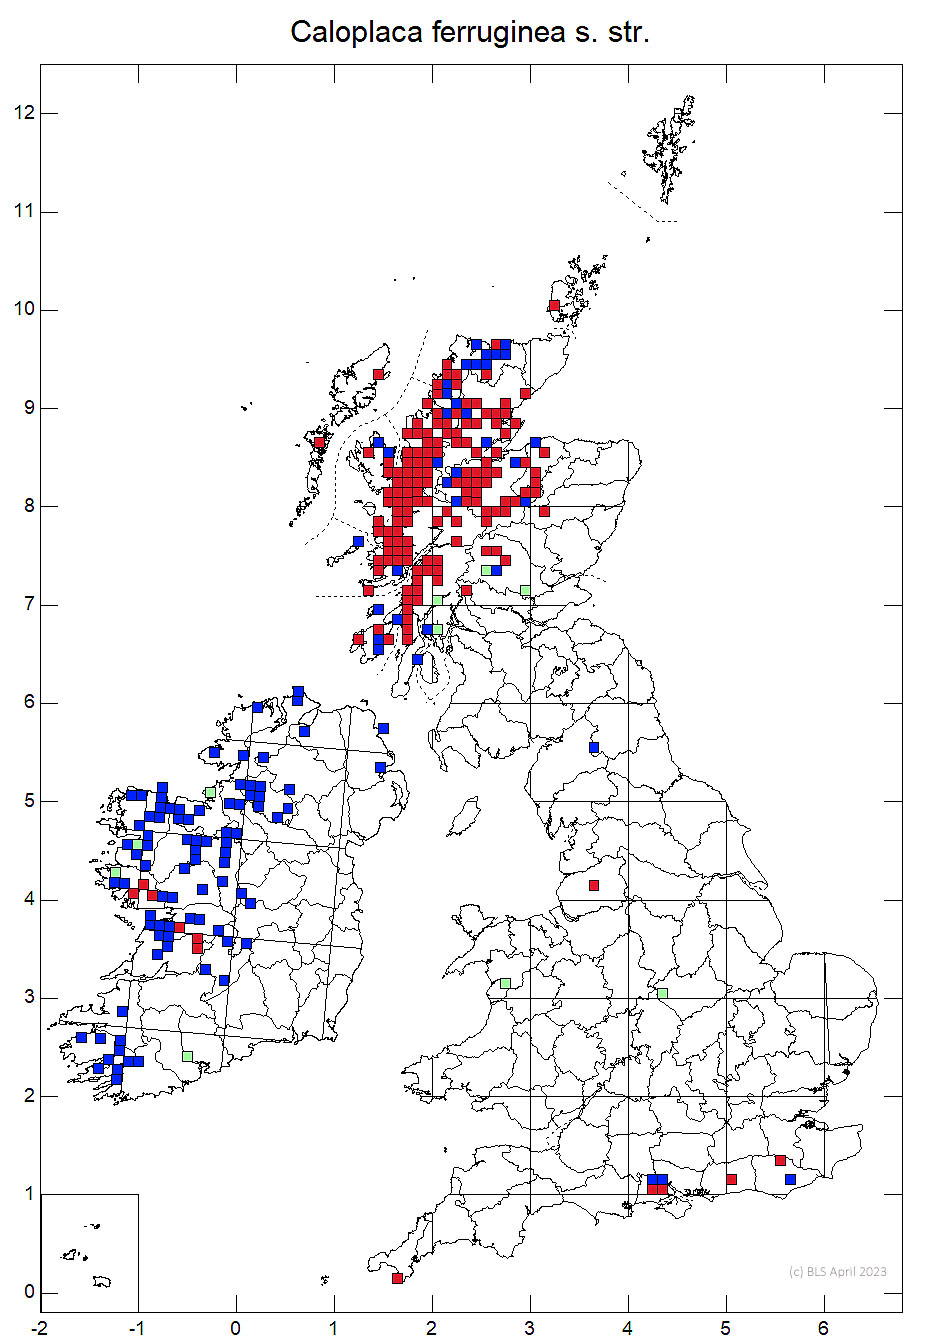 Caloplaca ferruginea s. str. 10km sq distribution map